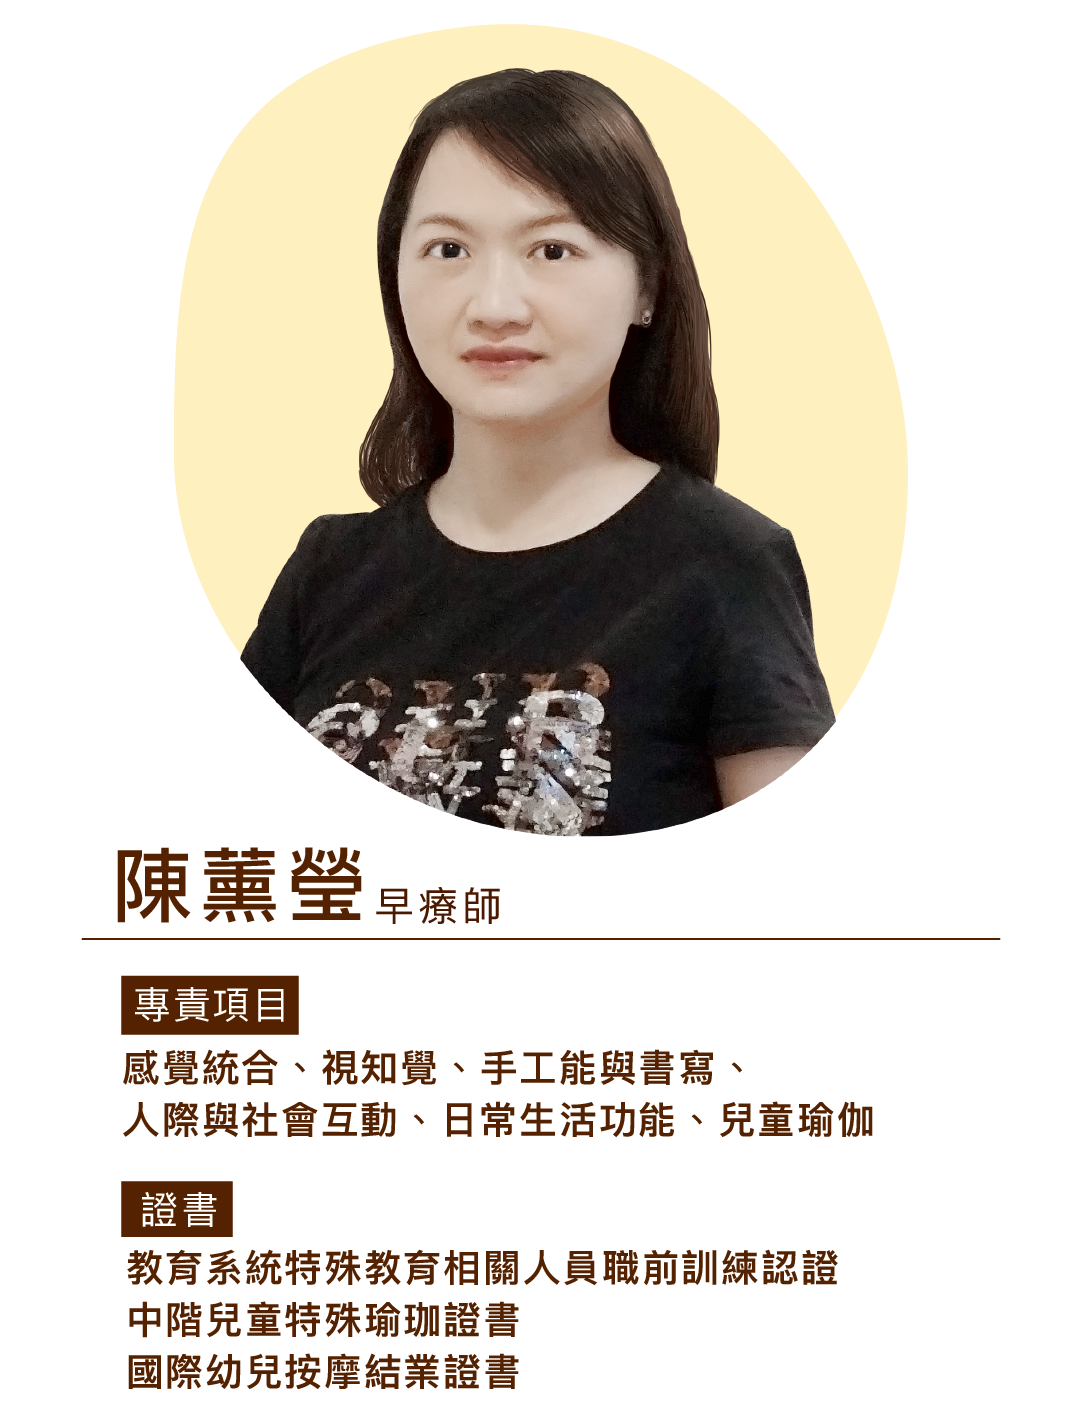 陳薰瑩,職能治療師,物理治療師,兒童瑜伽